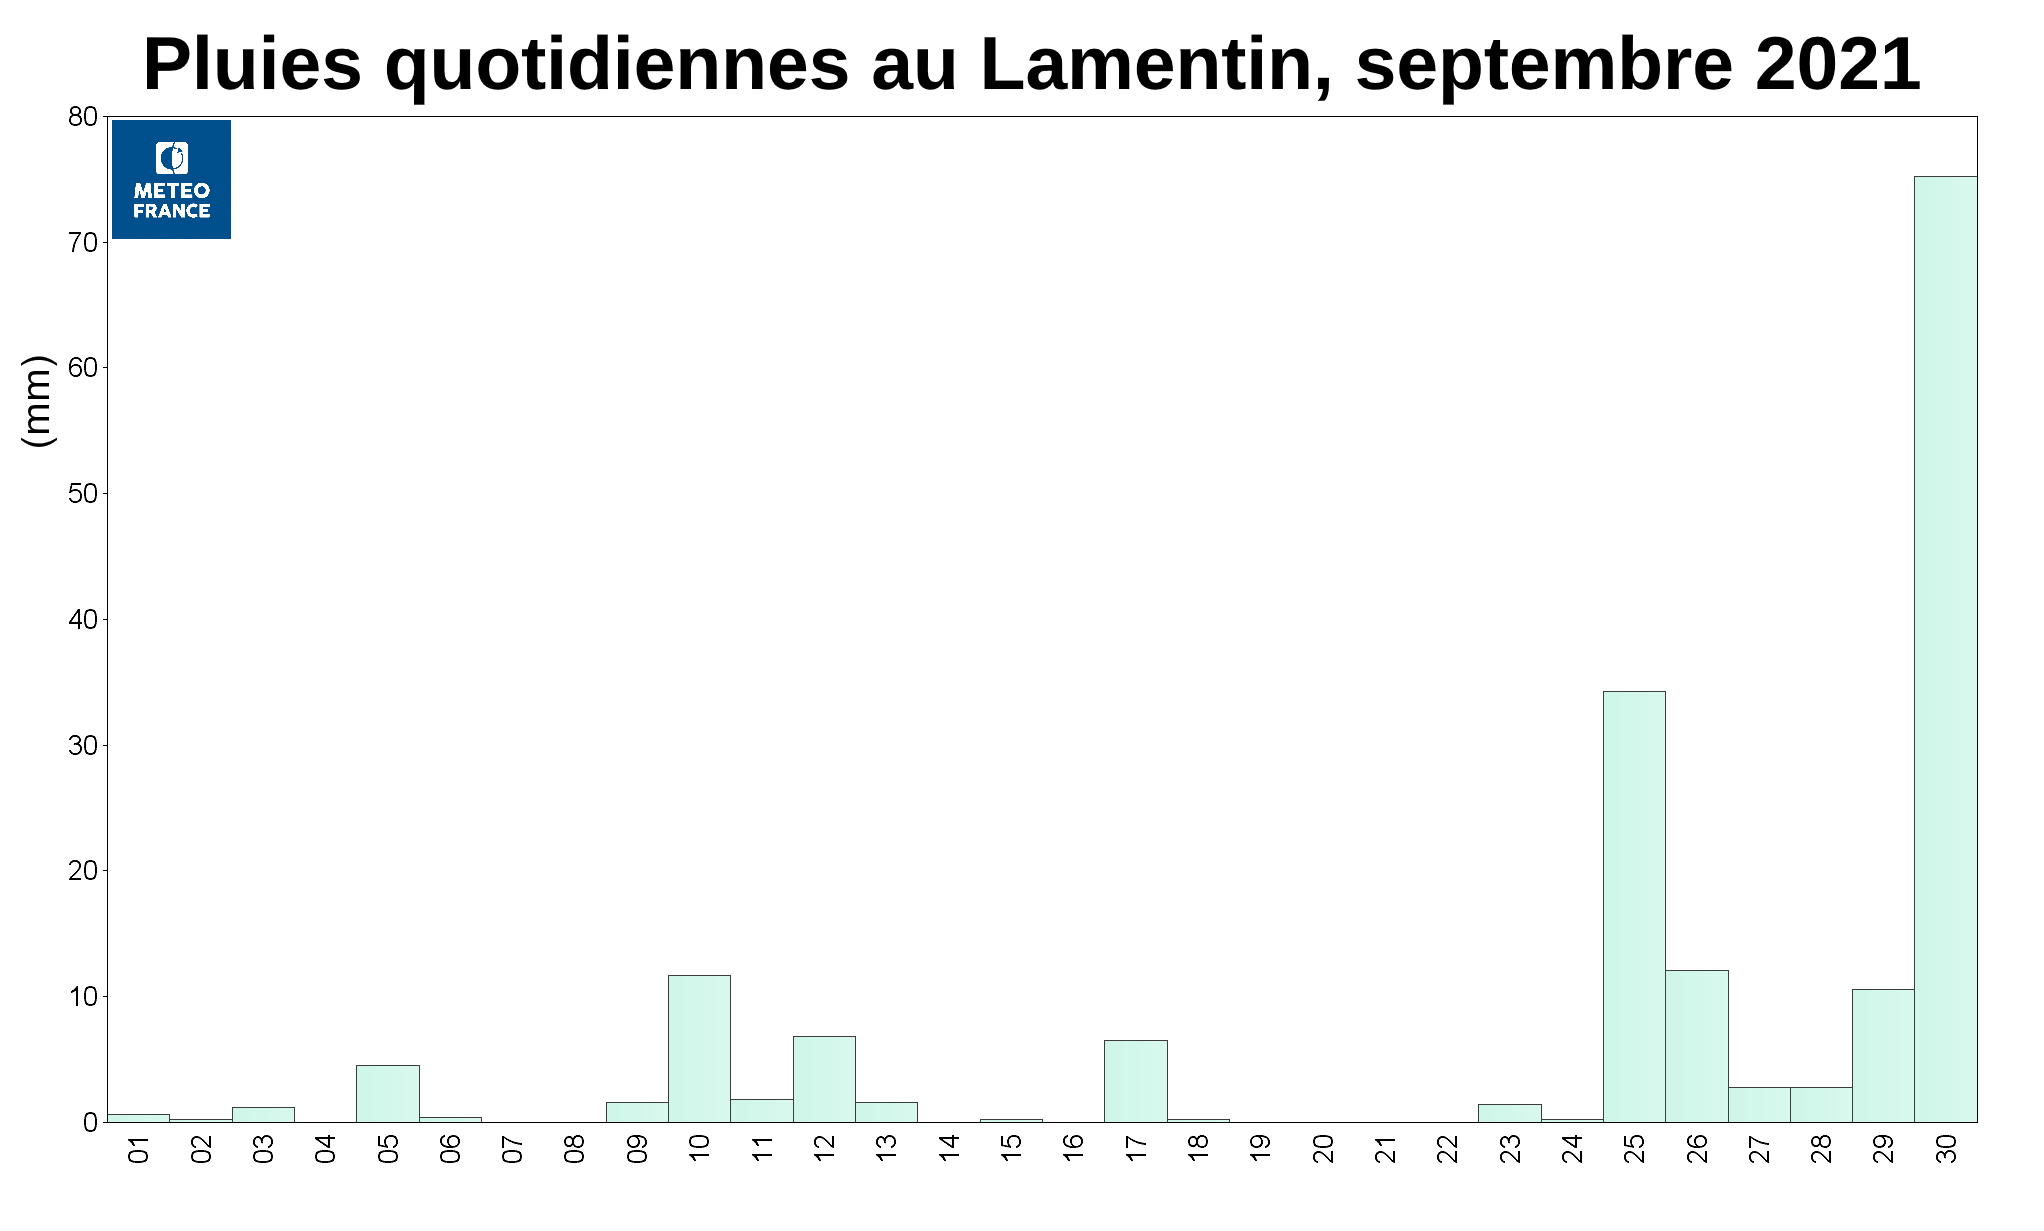 Pluies quotidienne au Lamentin - septembre 2021